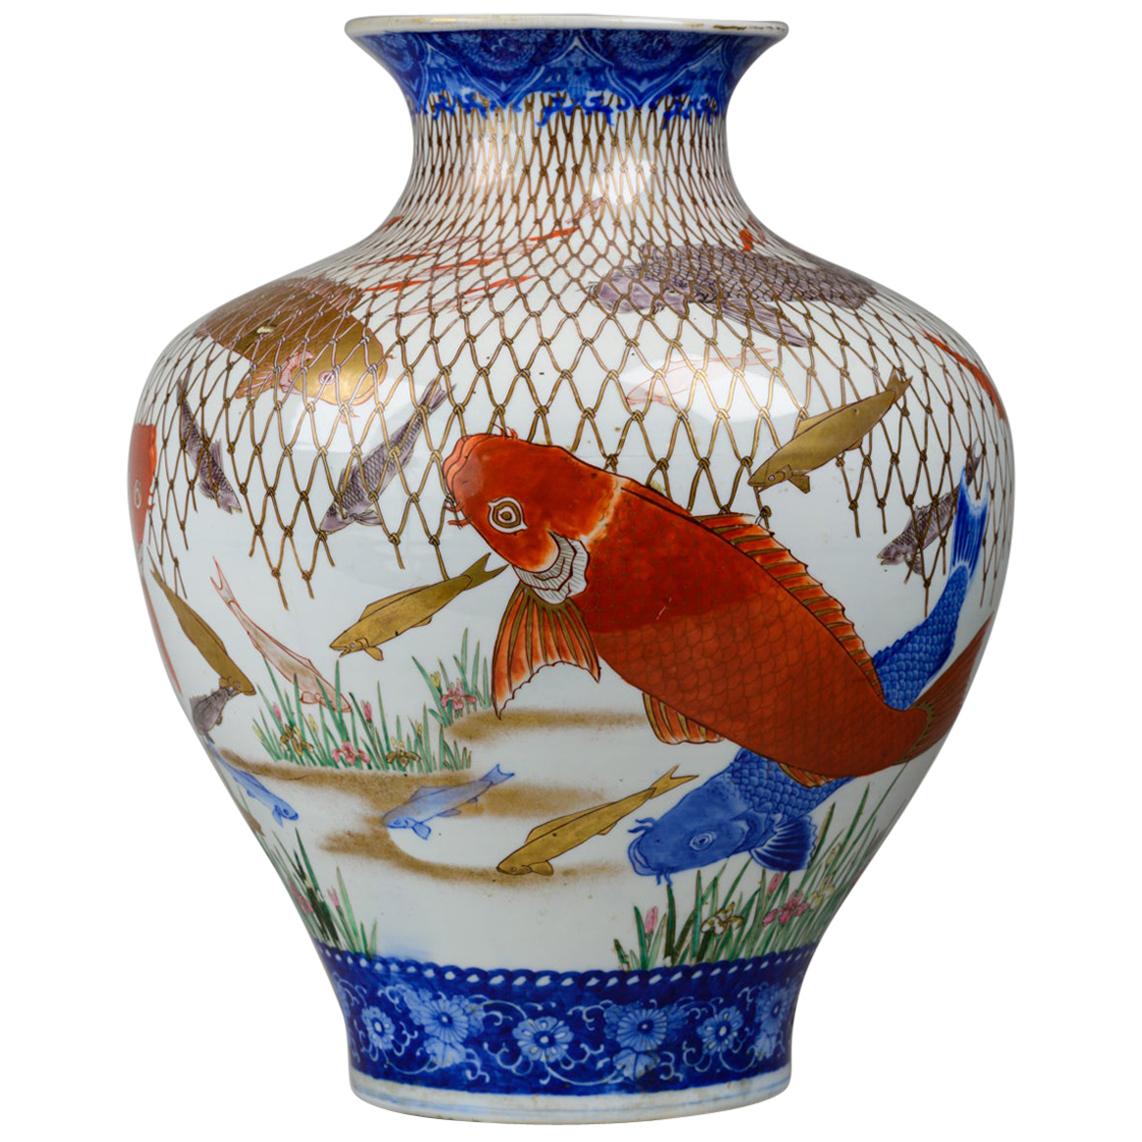 19th Century Large and Spectacular Multicolored Imari Vase